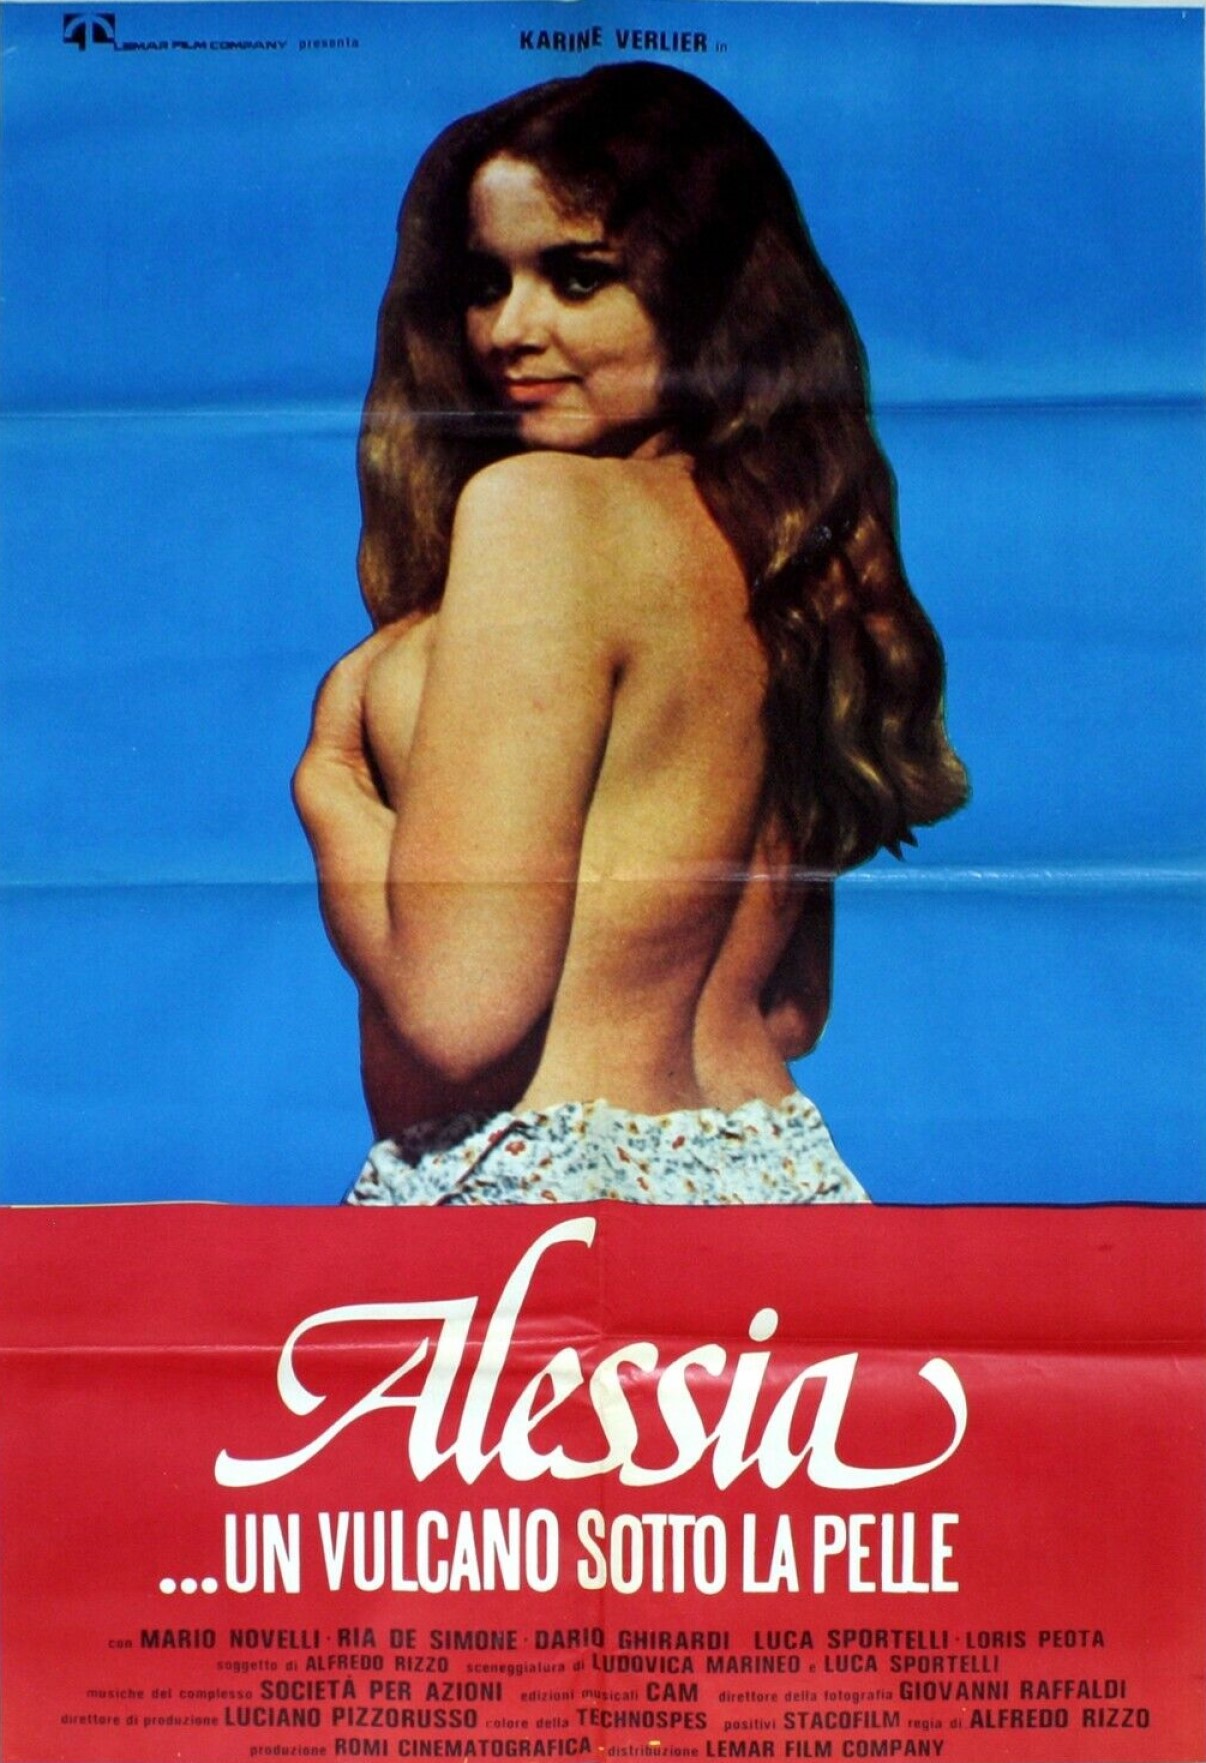 s-l1600 (4) Alessia... un vulcano sotto la pelle 1978 1.jpg